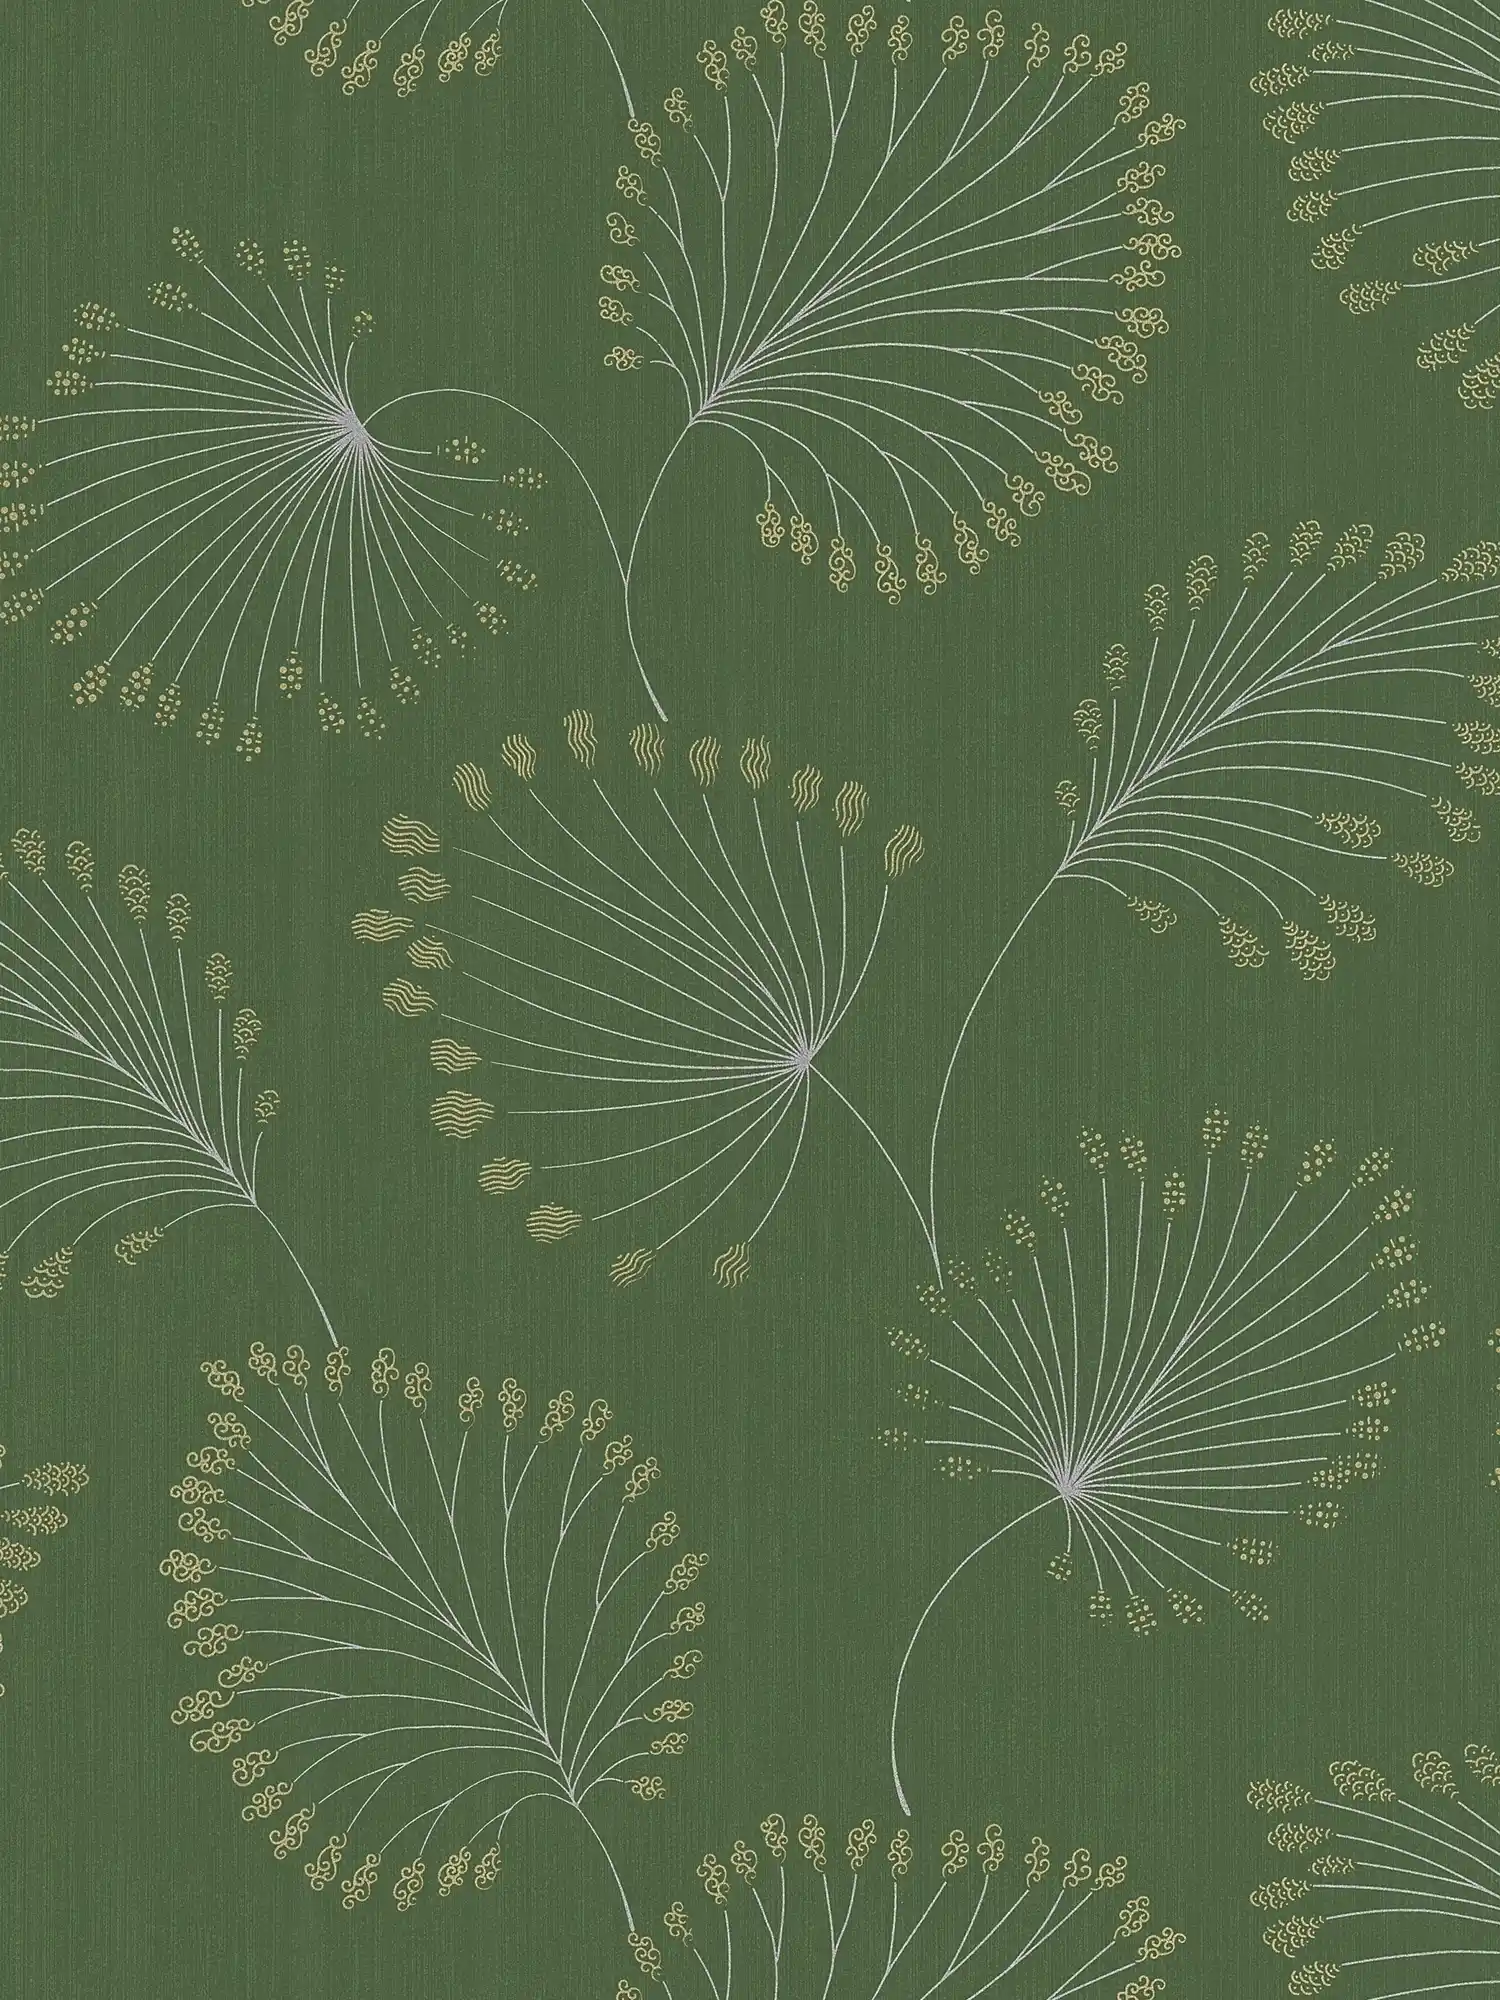 Retro behang met jaren 50 design & goudeffect - groen, metallic
